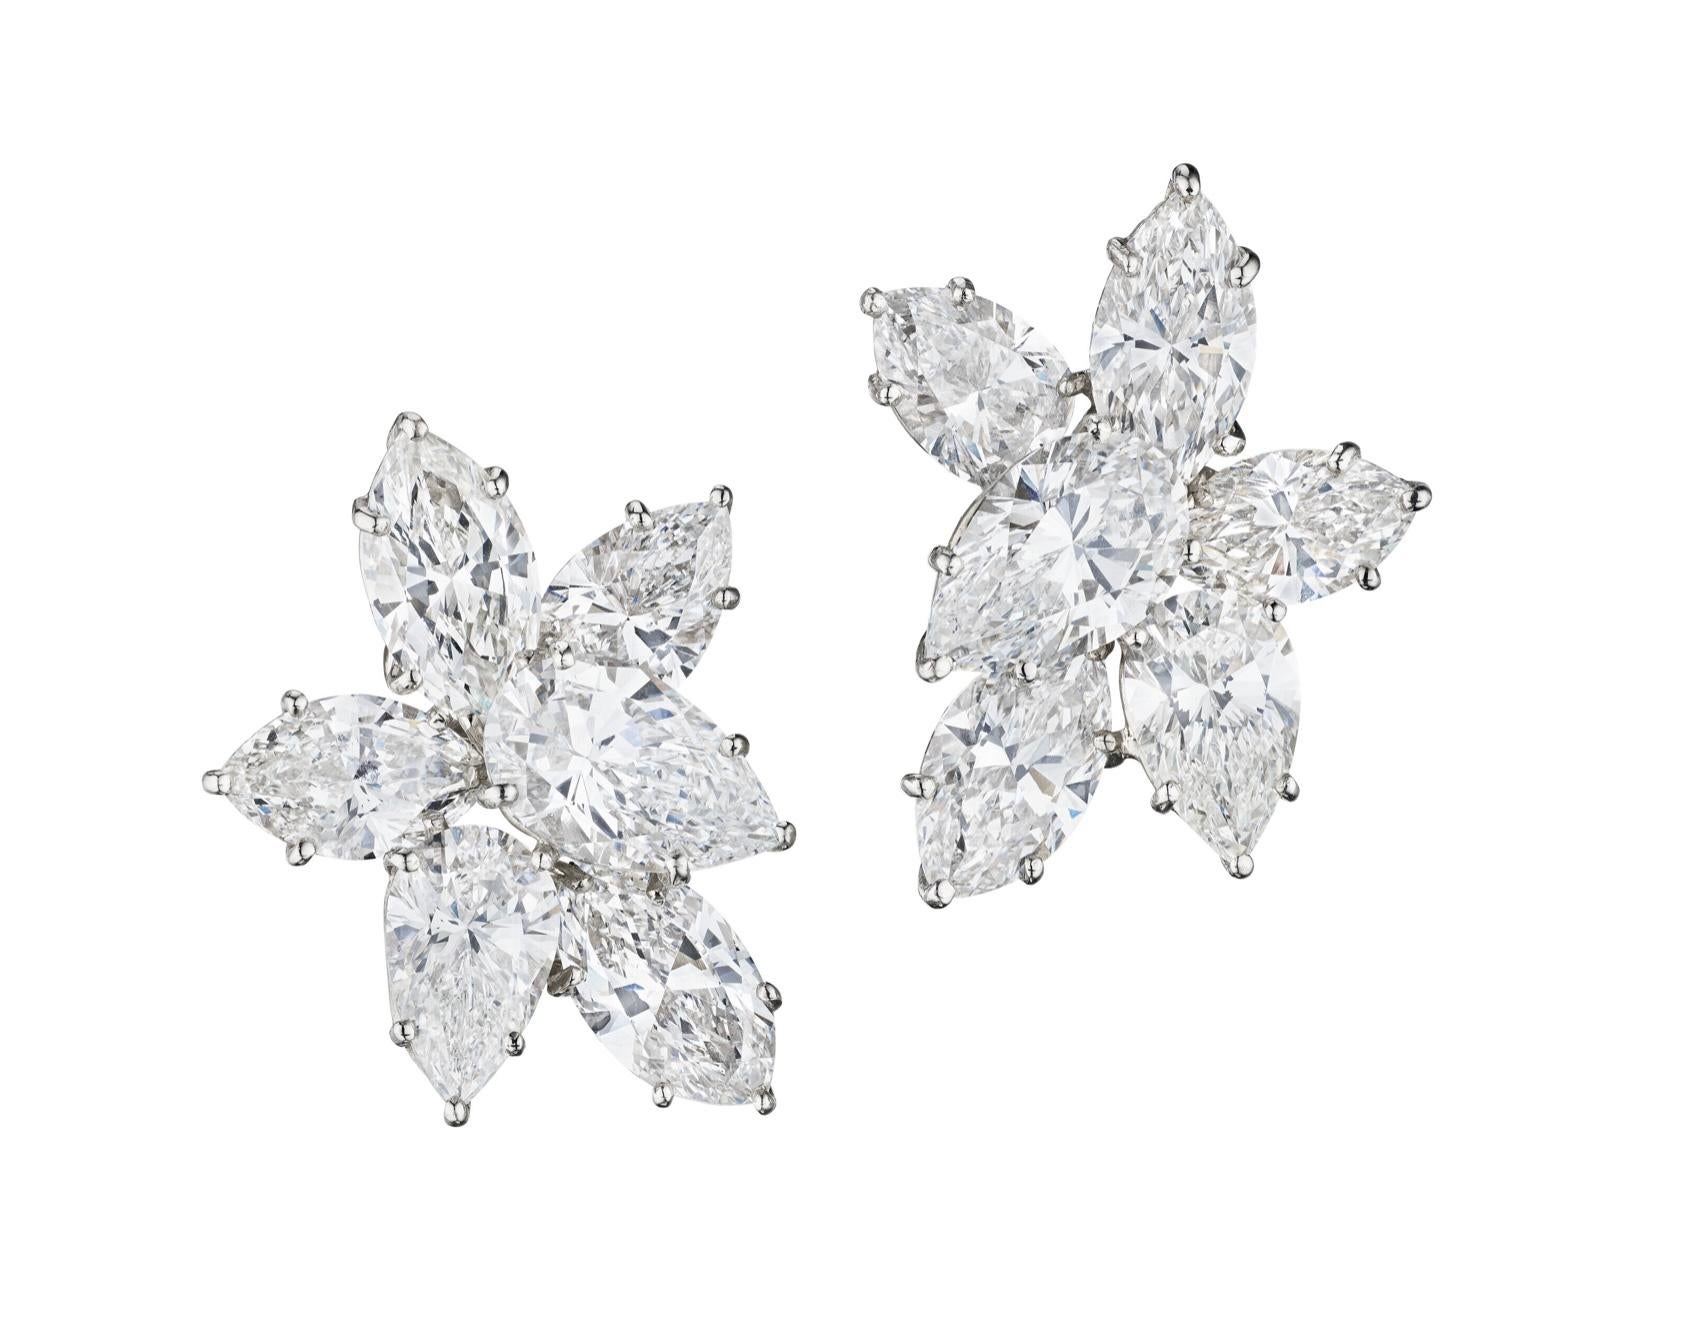 Classique, boucles d'oreilles Harry Winston à diamants.
 Cette paire d'Eleg intemporelle et élégante est ornée de 6 diamants taille marquise pesant au total 5,77 carats (couleur : E-F, pureté : VVS1- VS1 certifié GIA).
 et 6 diamants en forme de